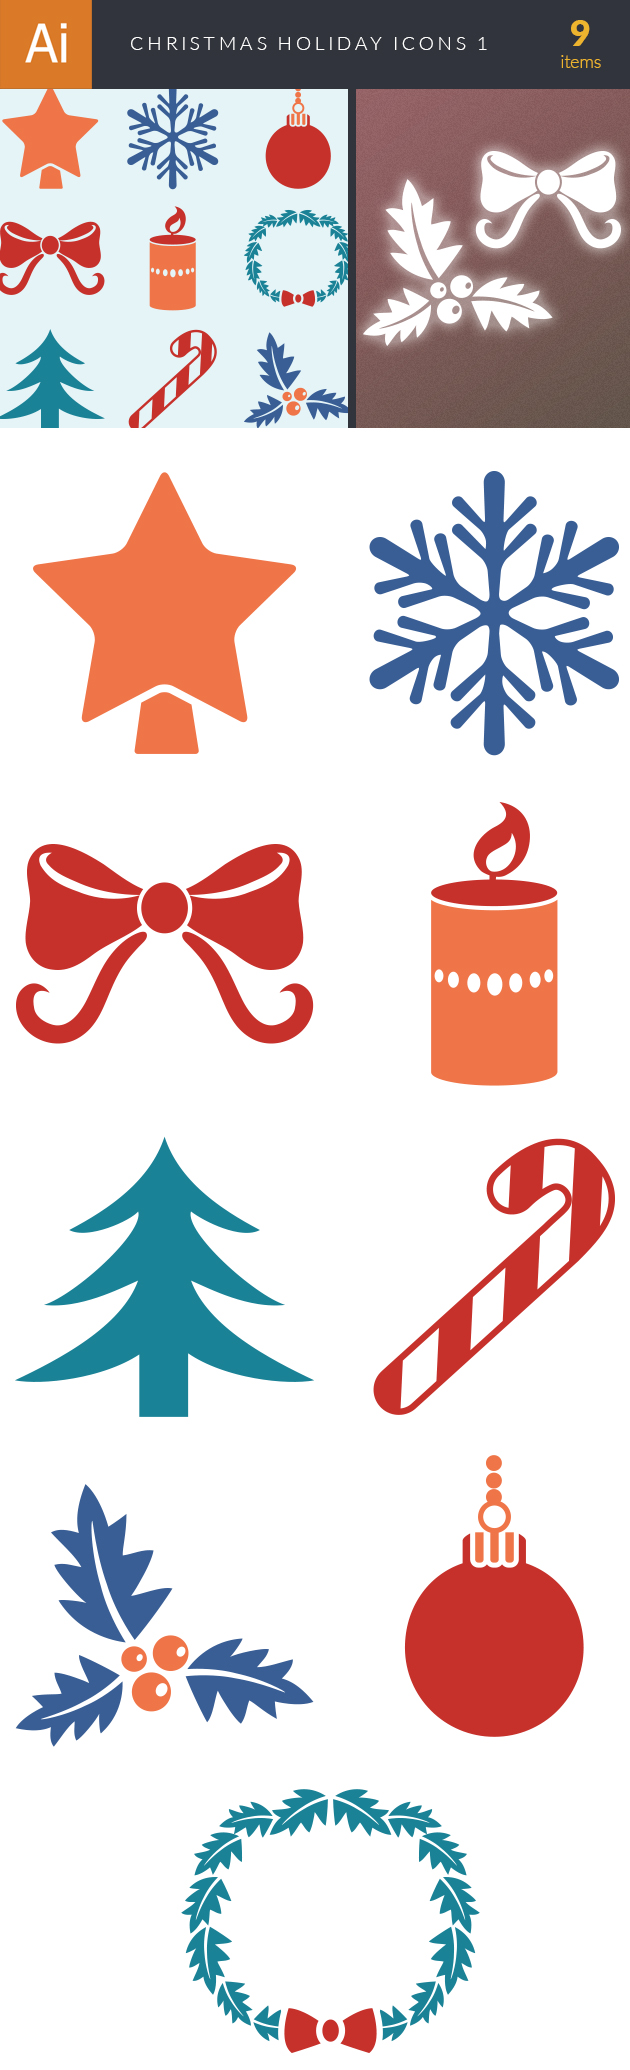 Christmas Holiday Icons Vector Set 1 2